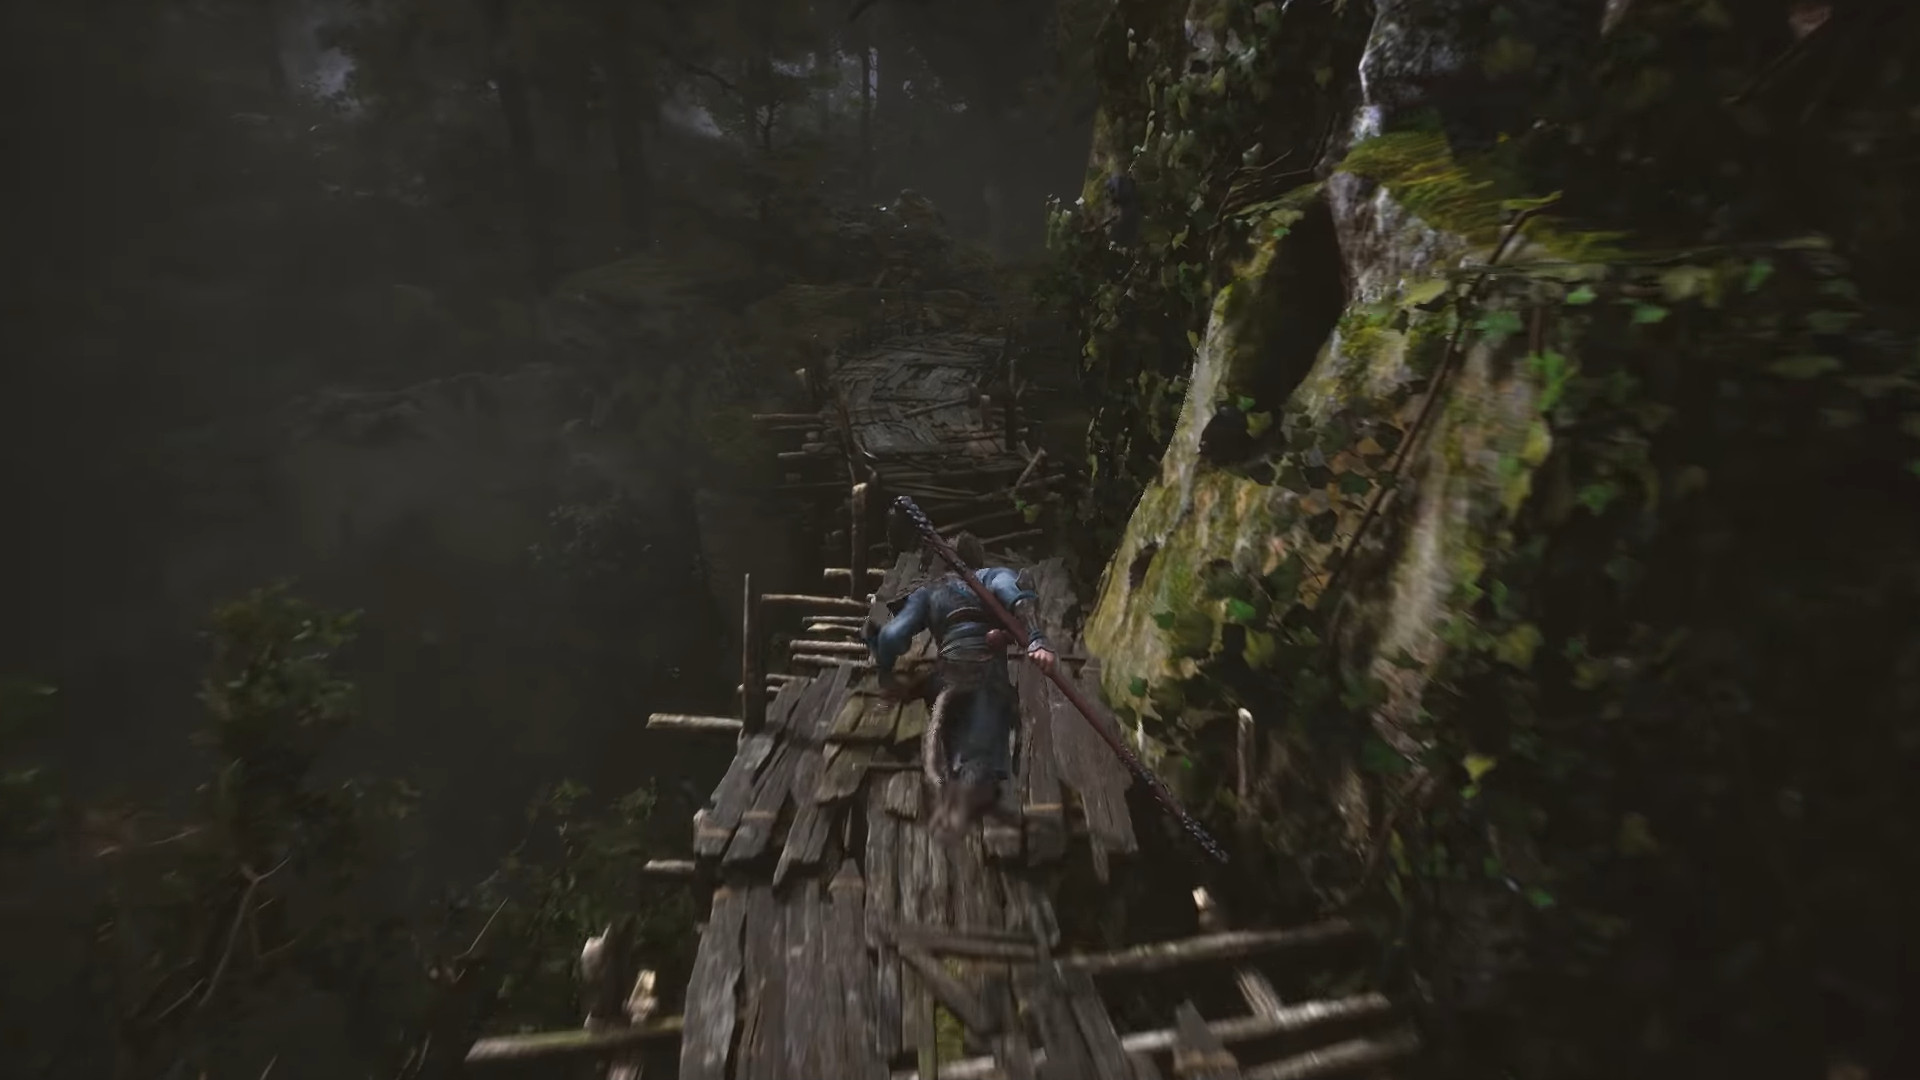 Black Myth Wukong recebe trailer de 8 minutos com gameplay